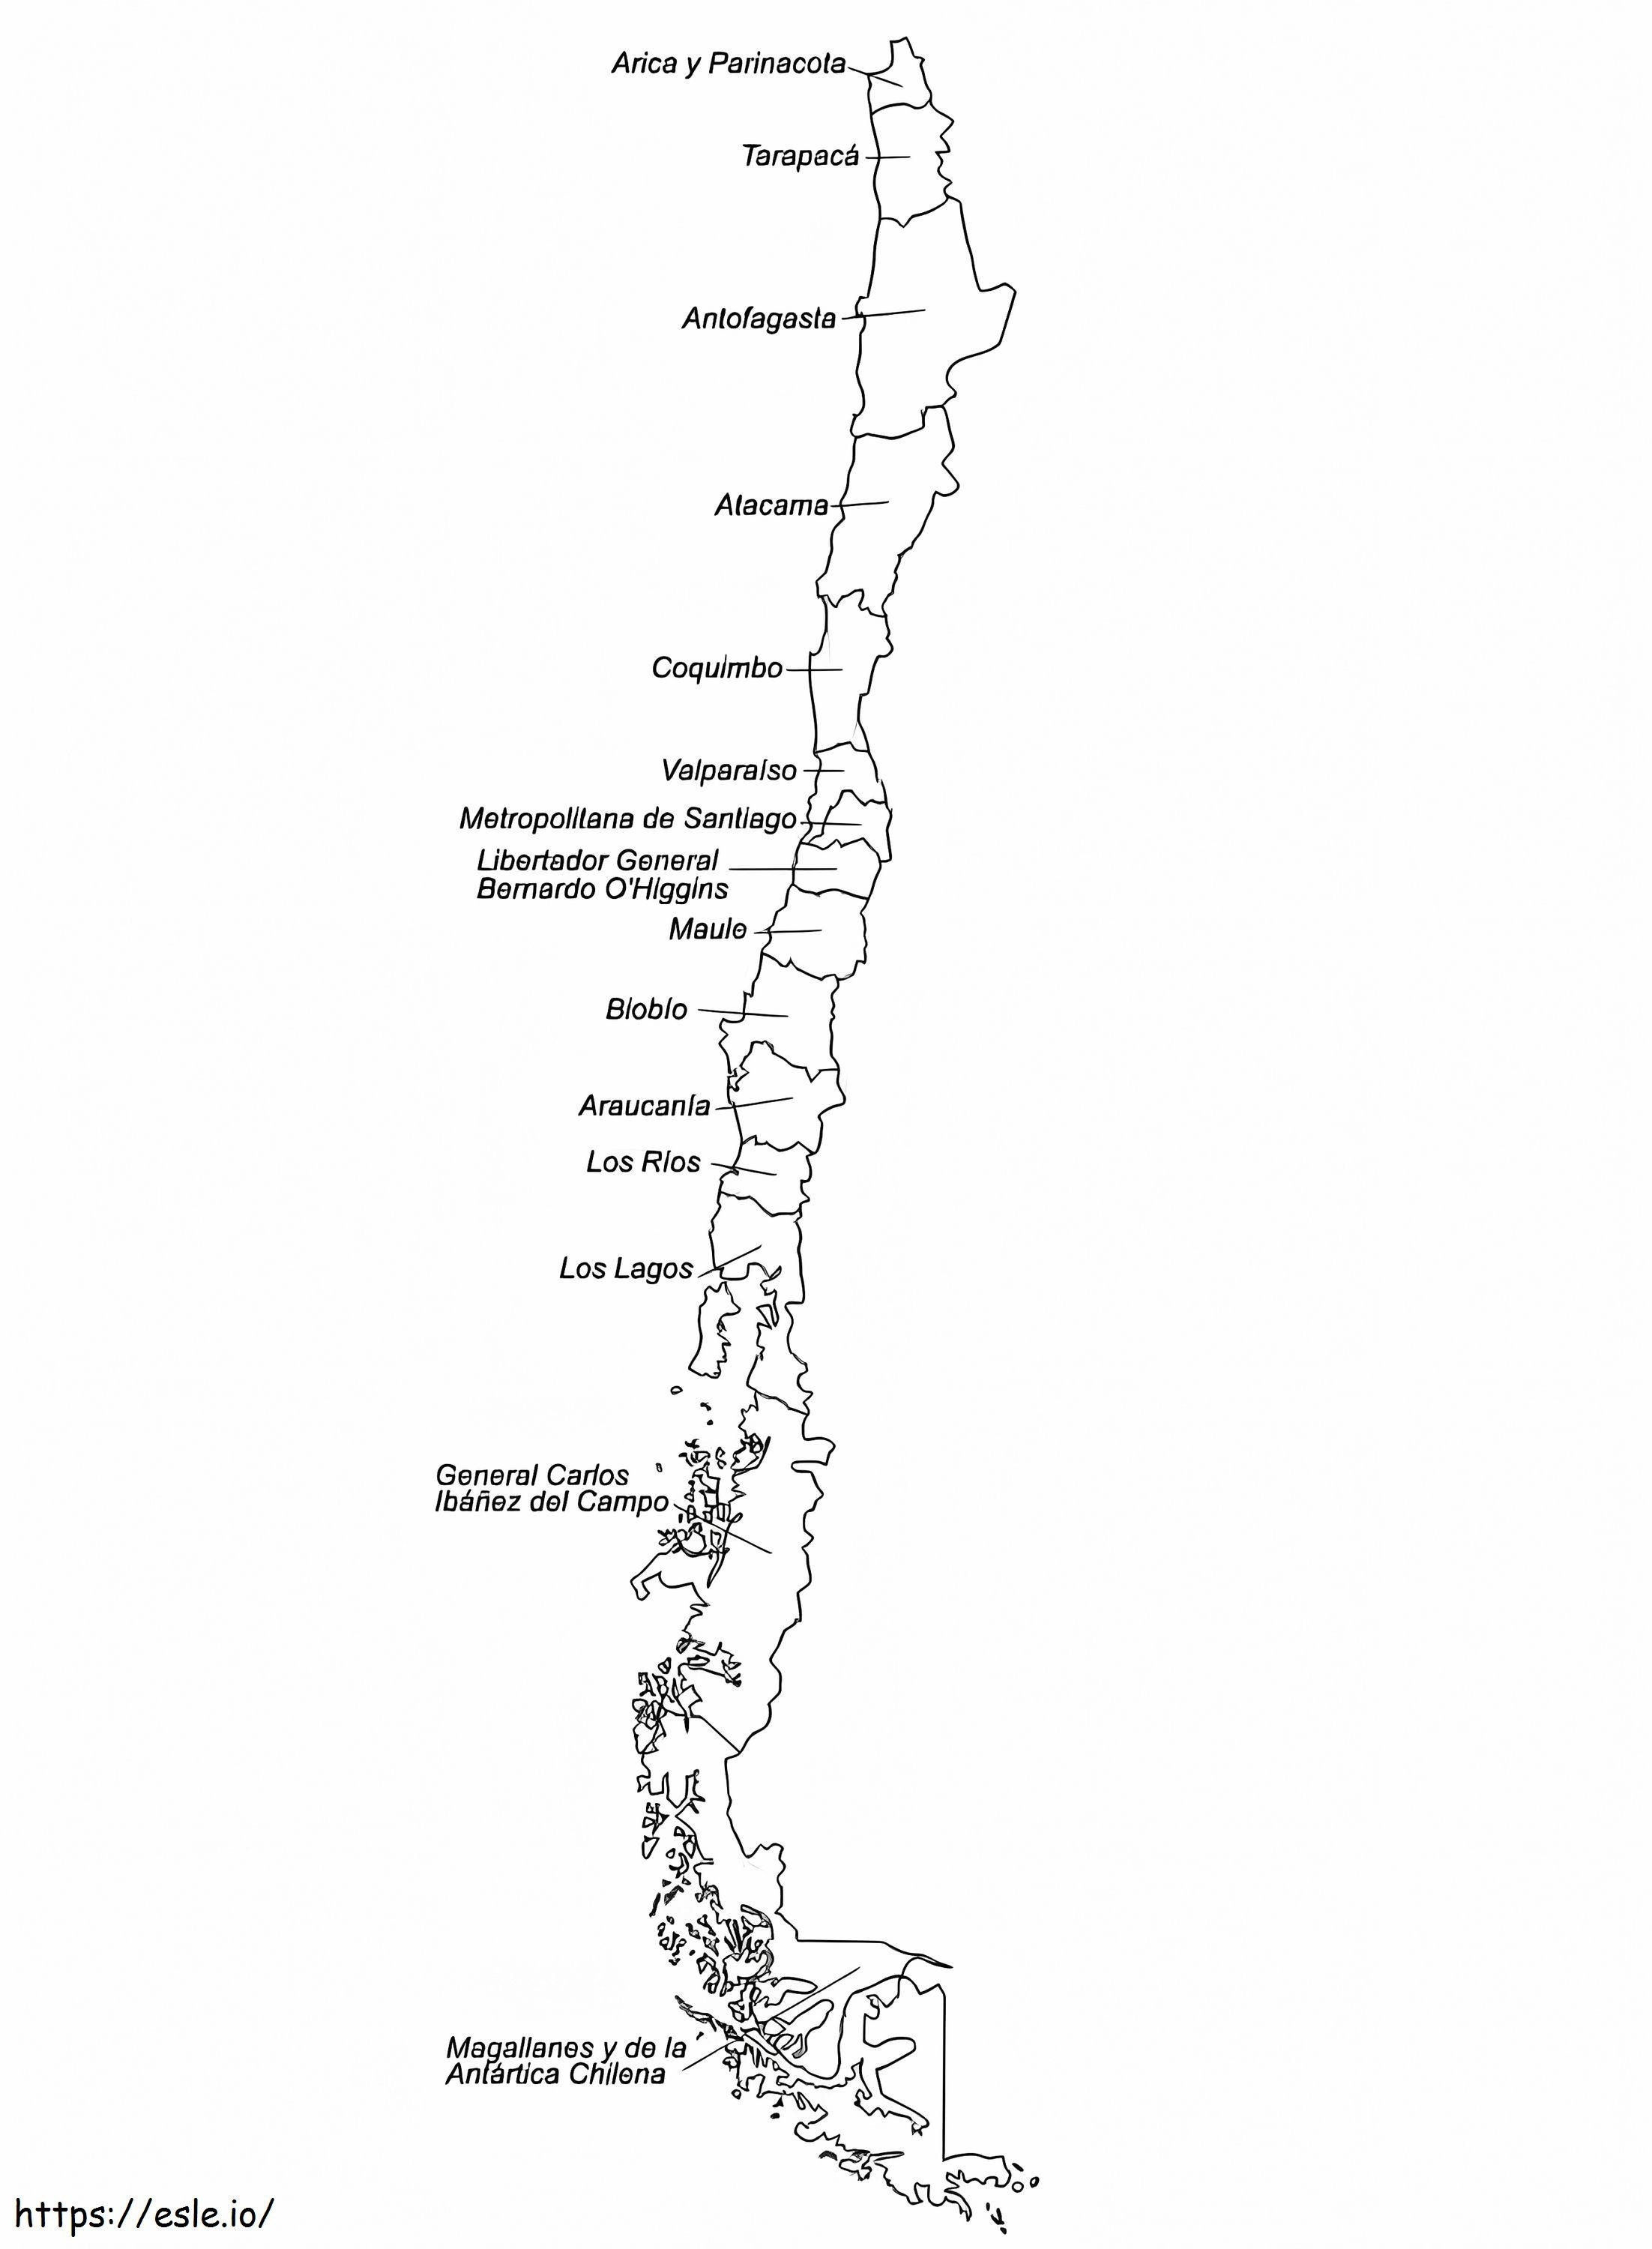 Mappa del Cile da colorare